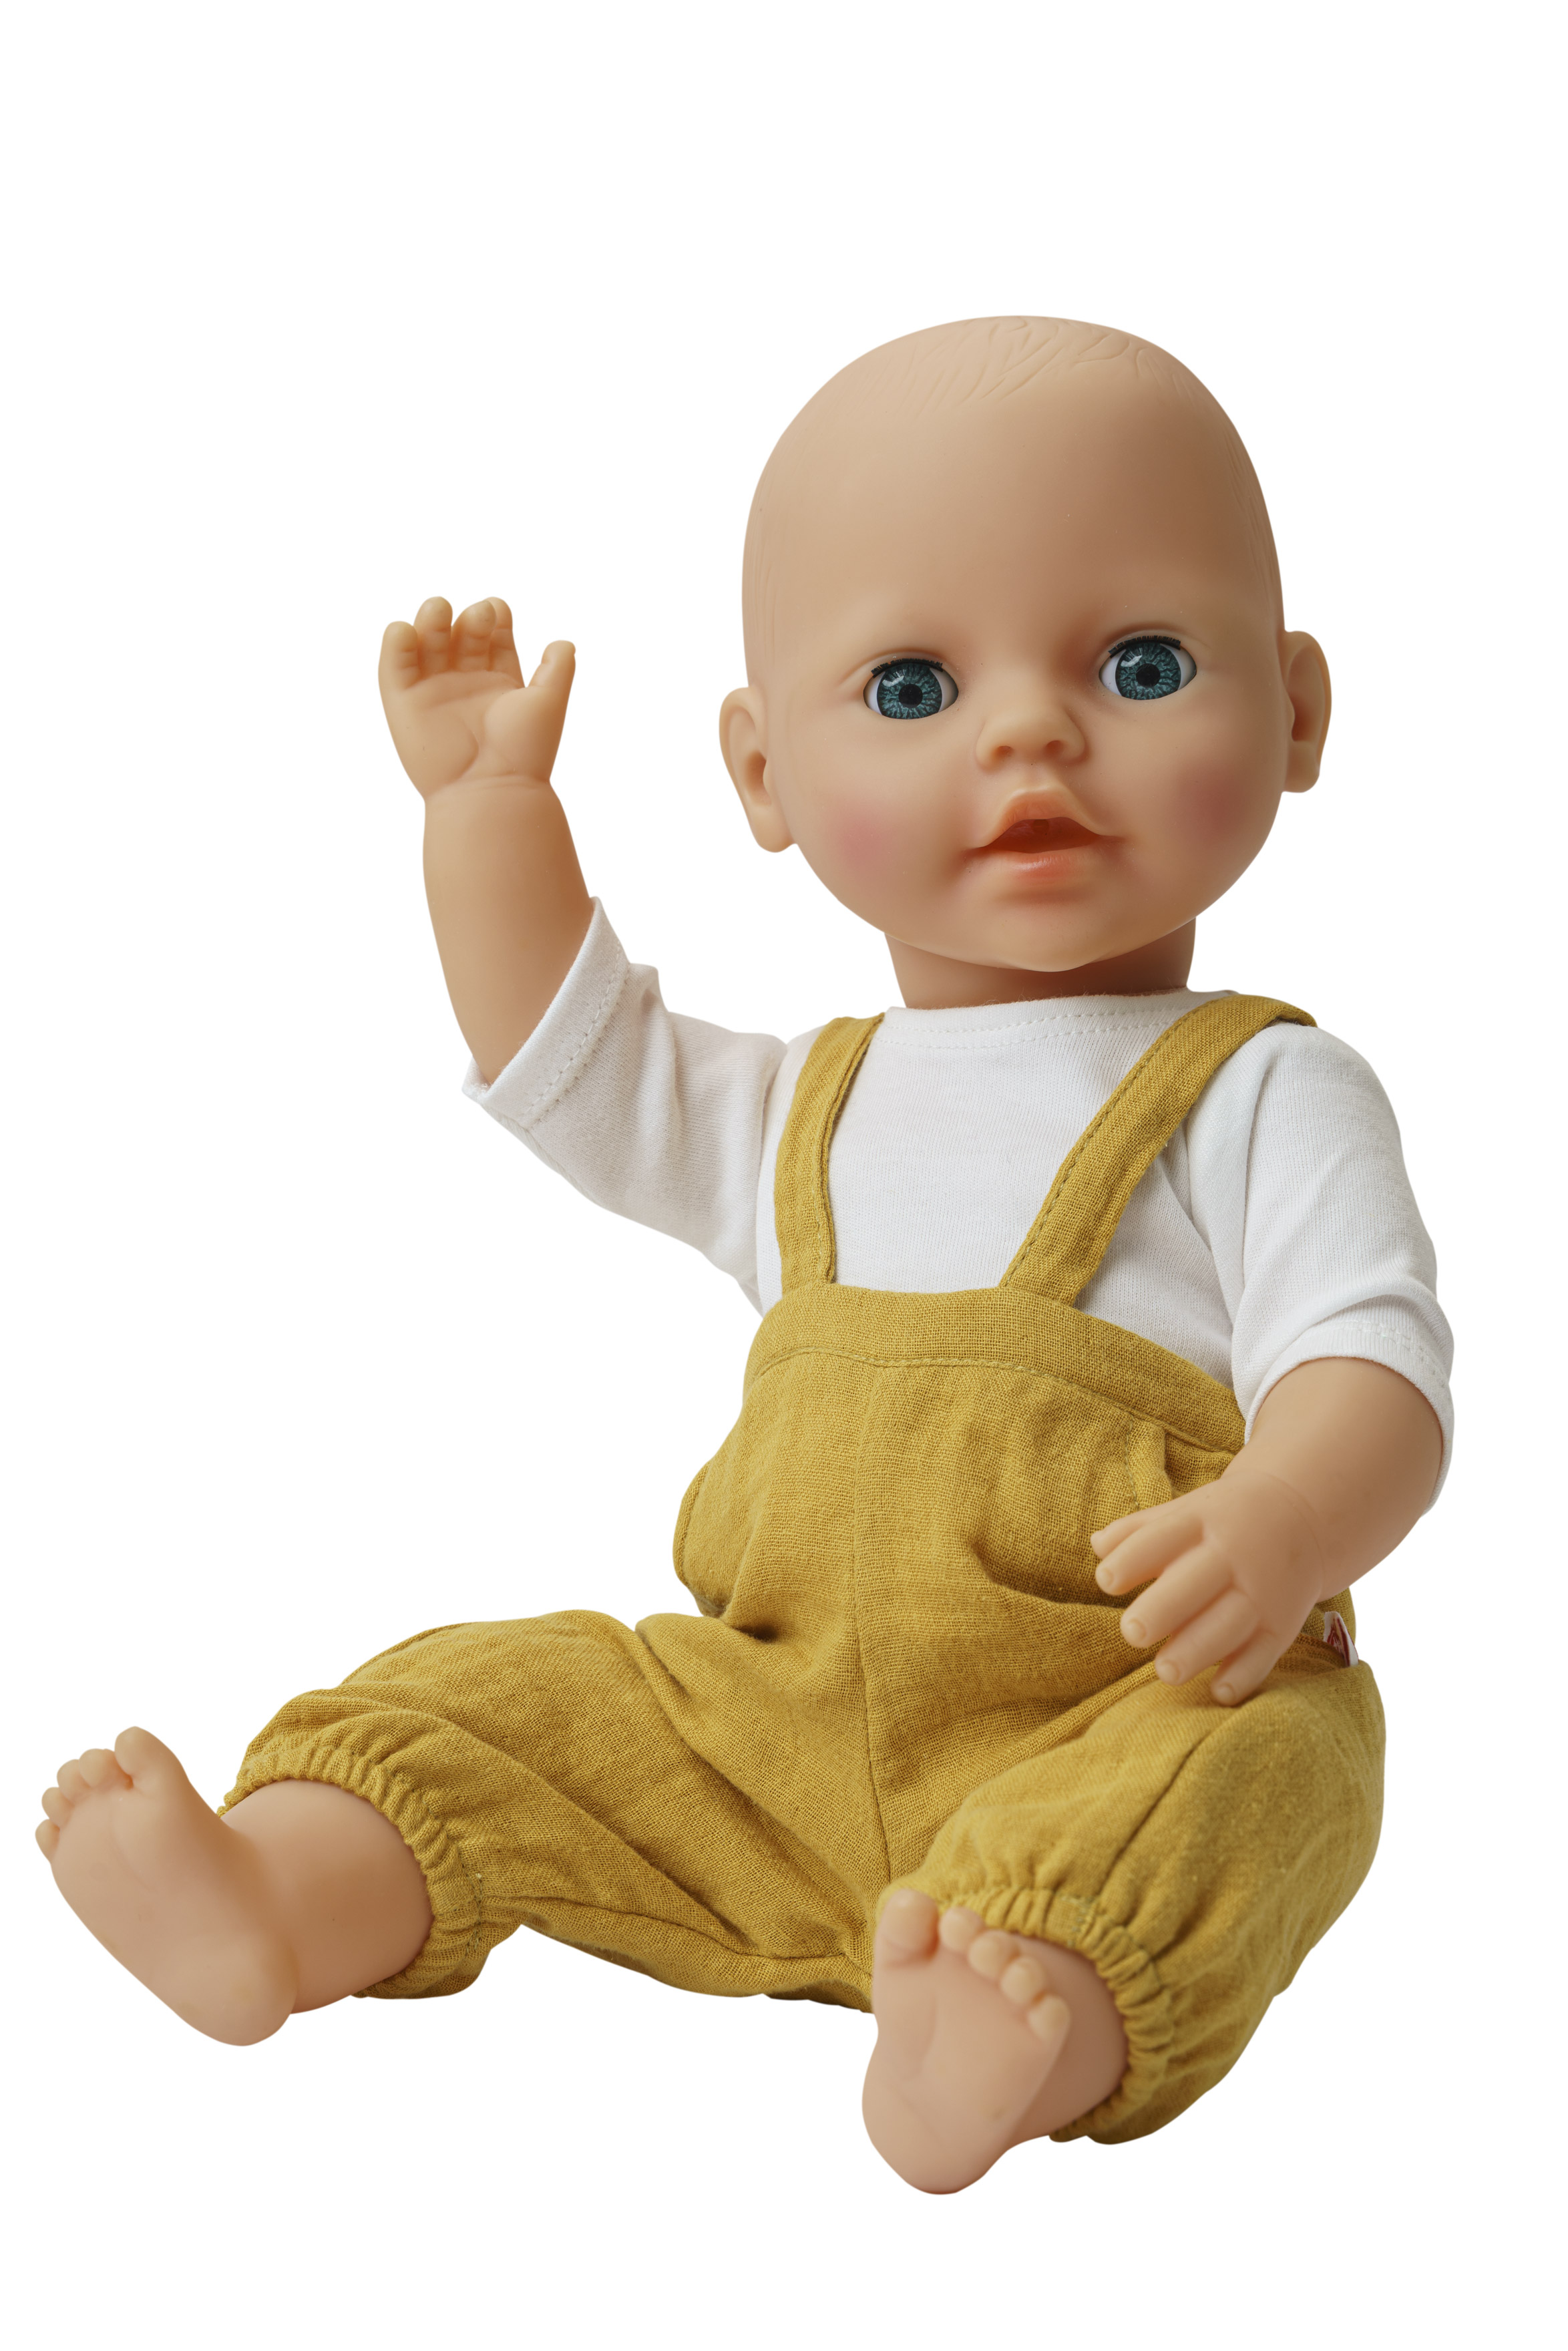 Puppen-Latzhose aus 100 % Bio-Baumwolle, honiggelb, mit weißem T-Shirt, 2-teilig, Gr. 28-35 cm